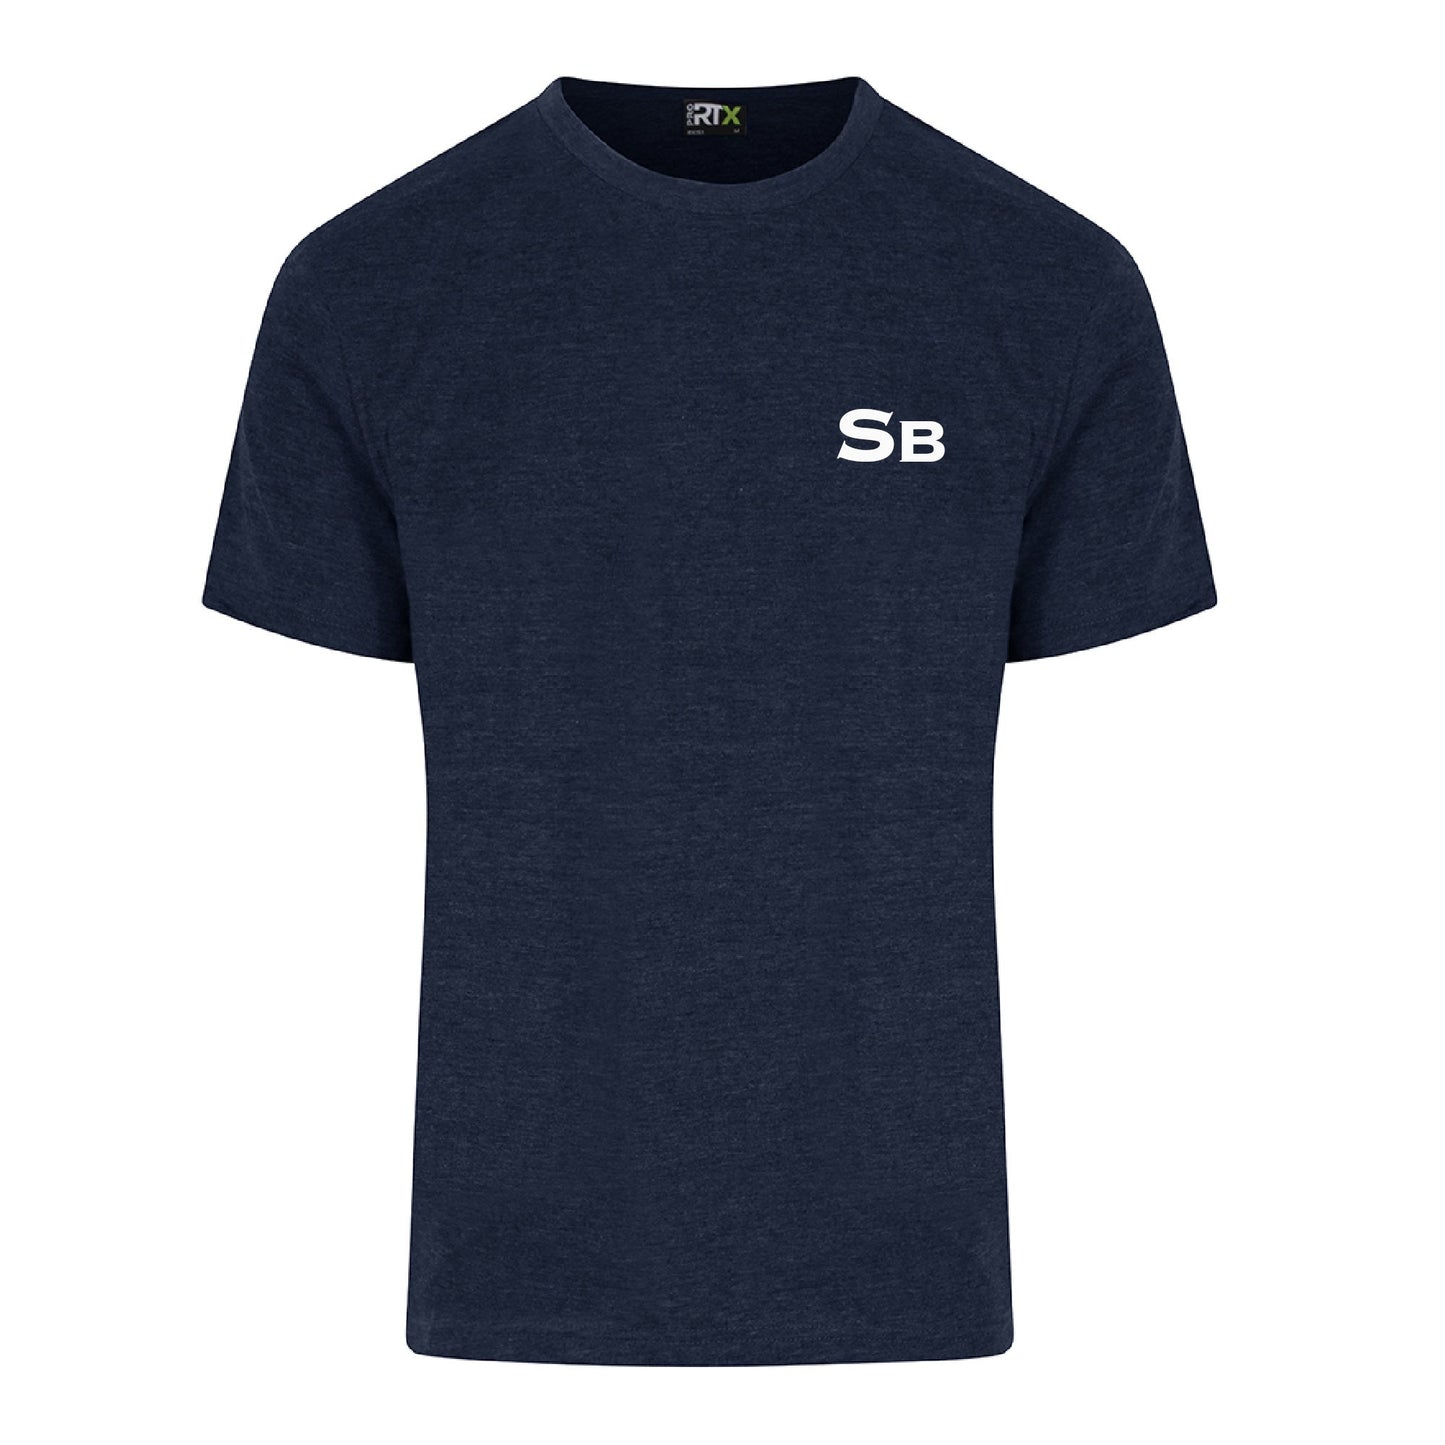 Stringybark Ltd Navy T-Shirt Adults